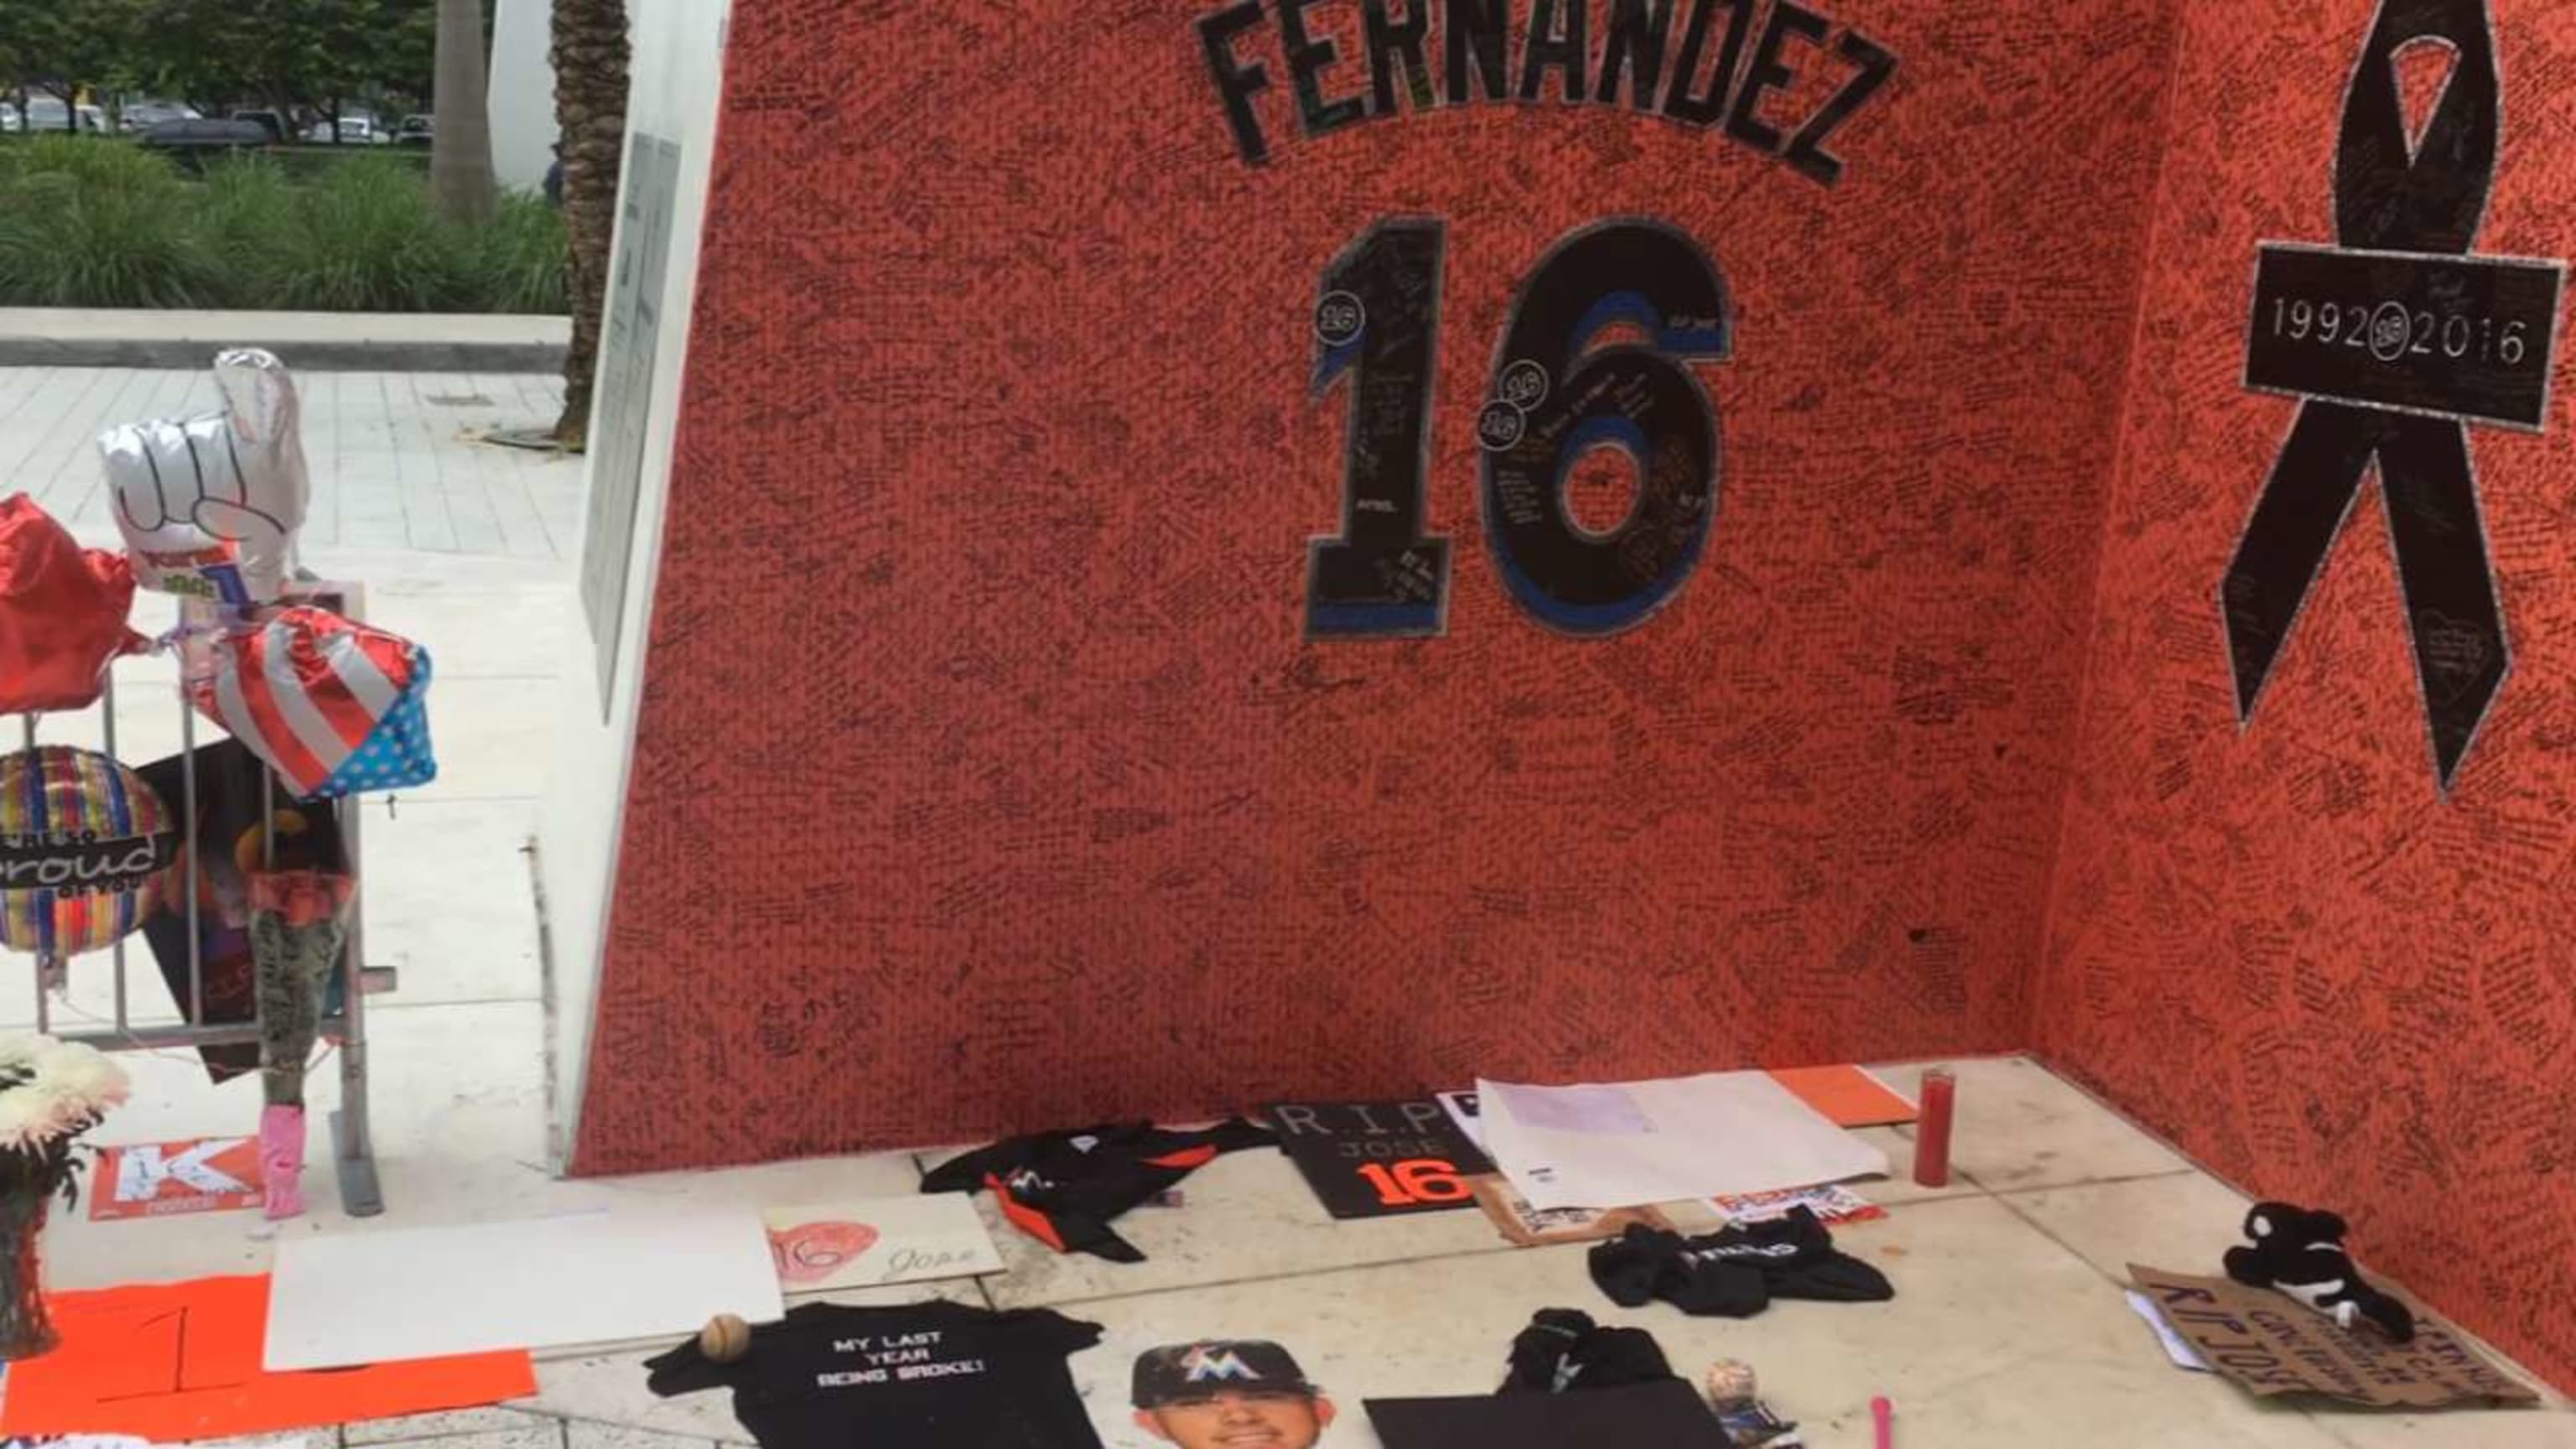 Jose Fernandez mourned at memorial at ballpark